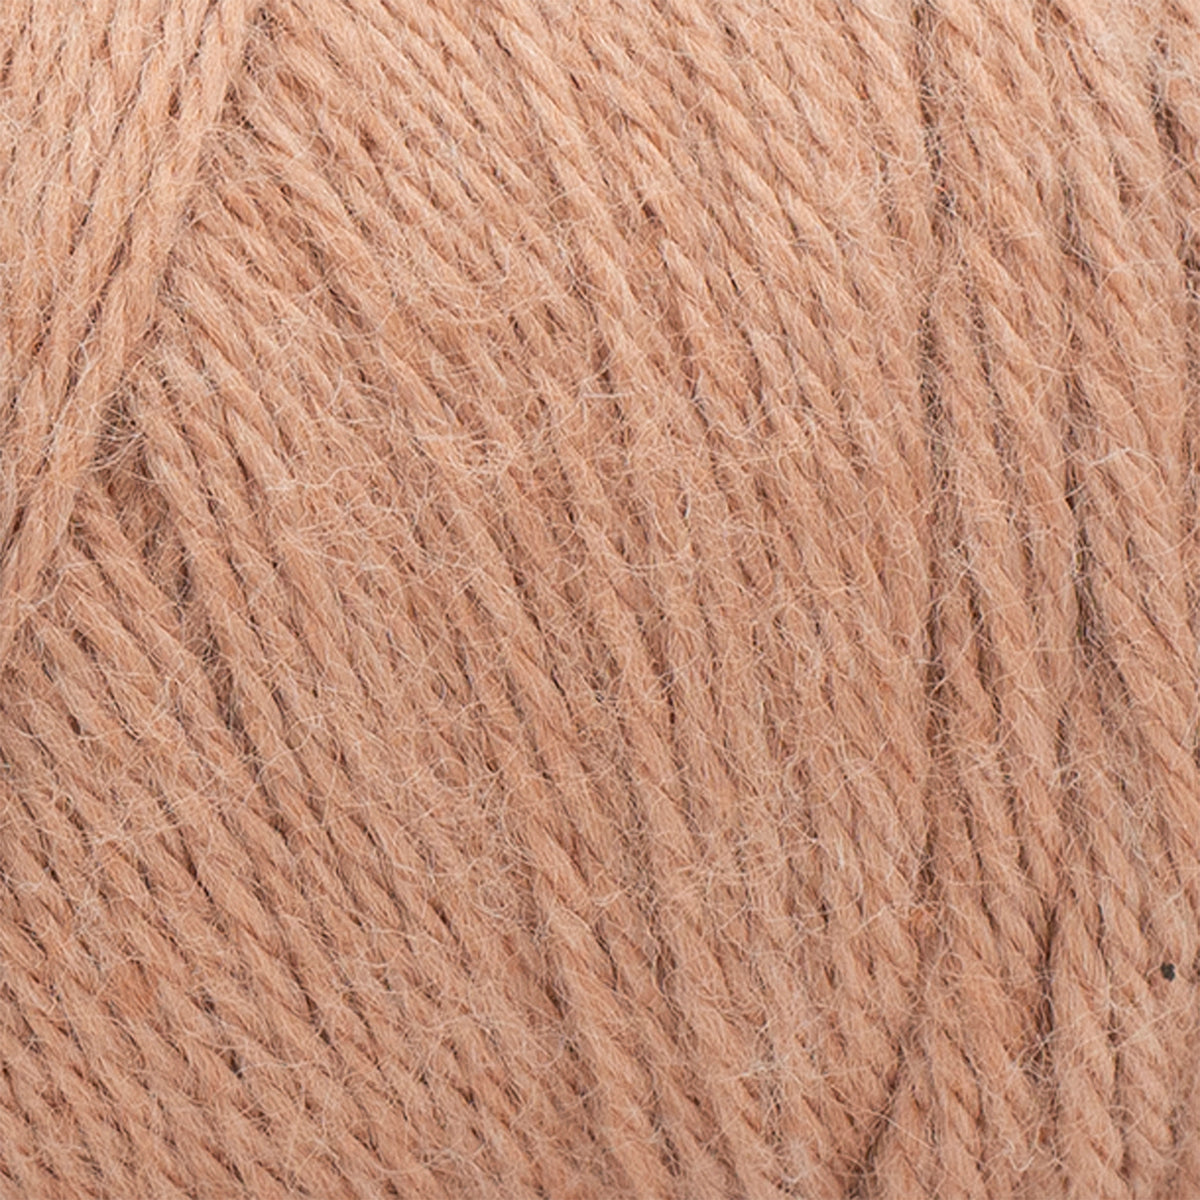 A Star is Born: Warm & Fuzzy Yarn - Discontinued – Lion Brand Yarn